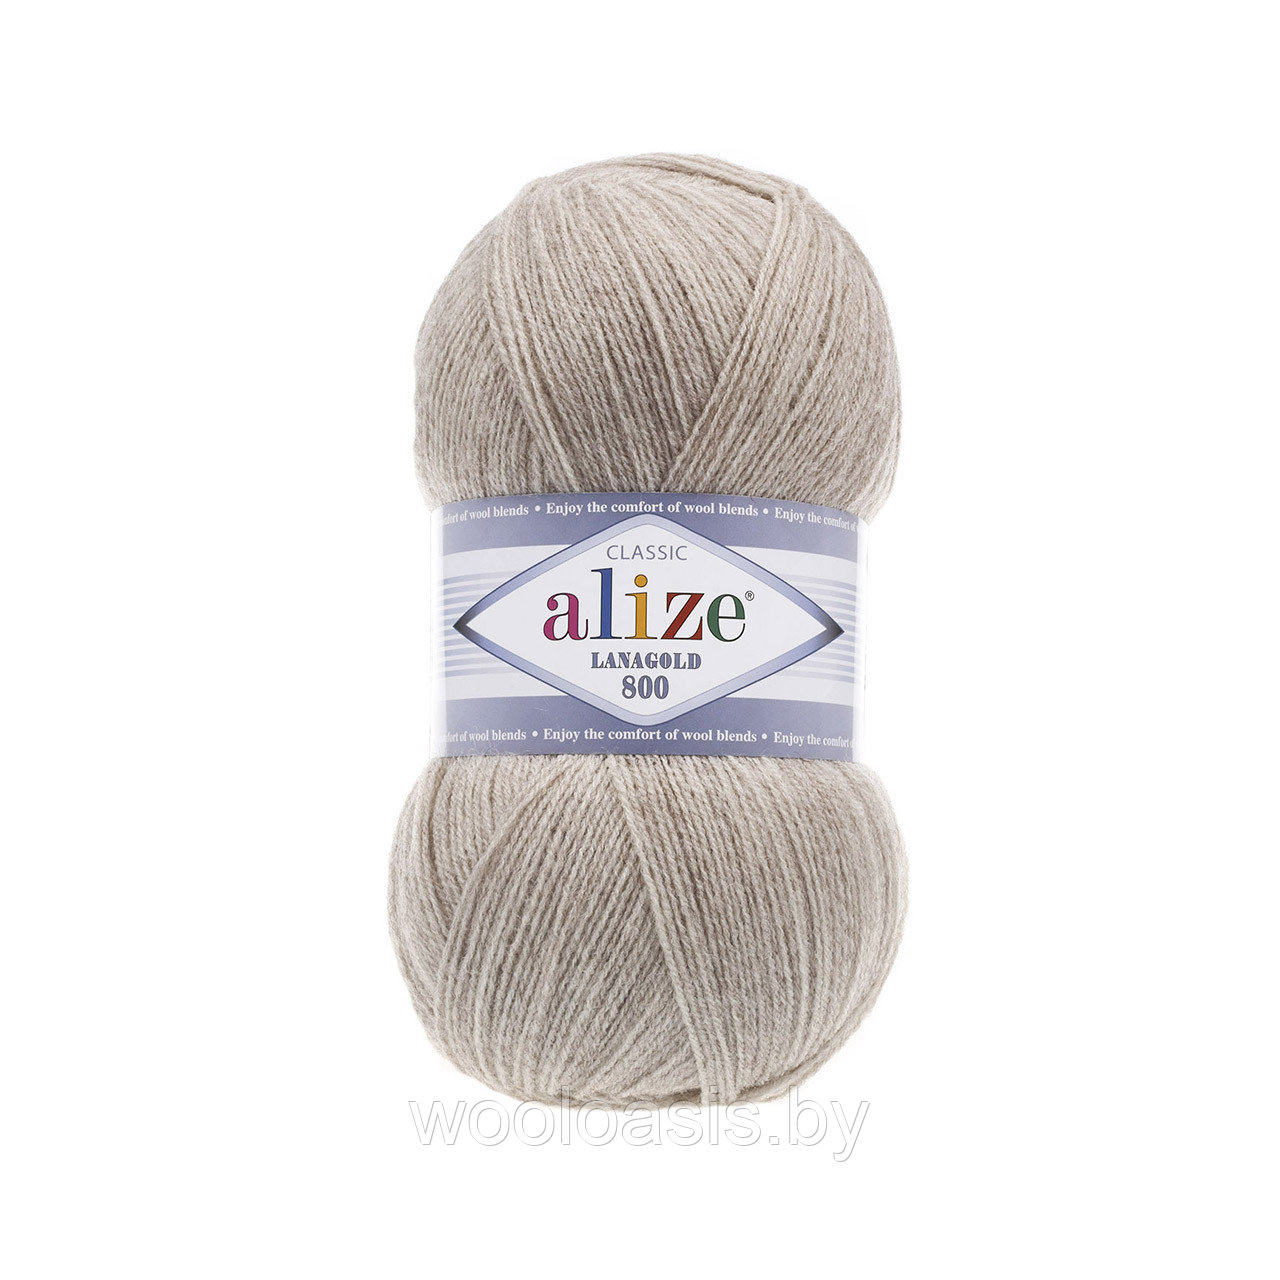 Пряжа Alize Lanagold 800, Ализе Ланаголд 800, турецкая, шерсть с акрилом, для ручного вязания (цвет 152)